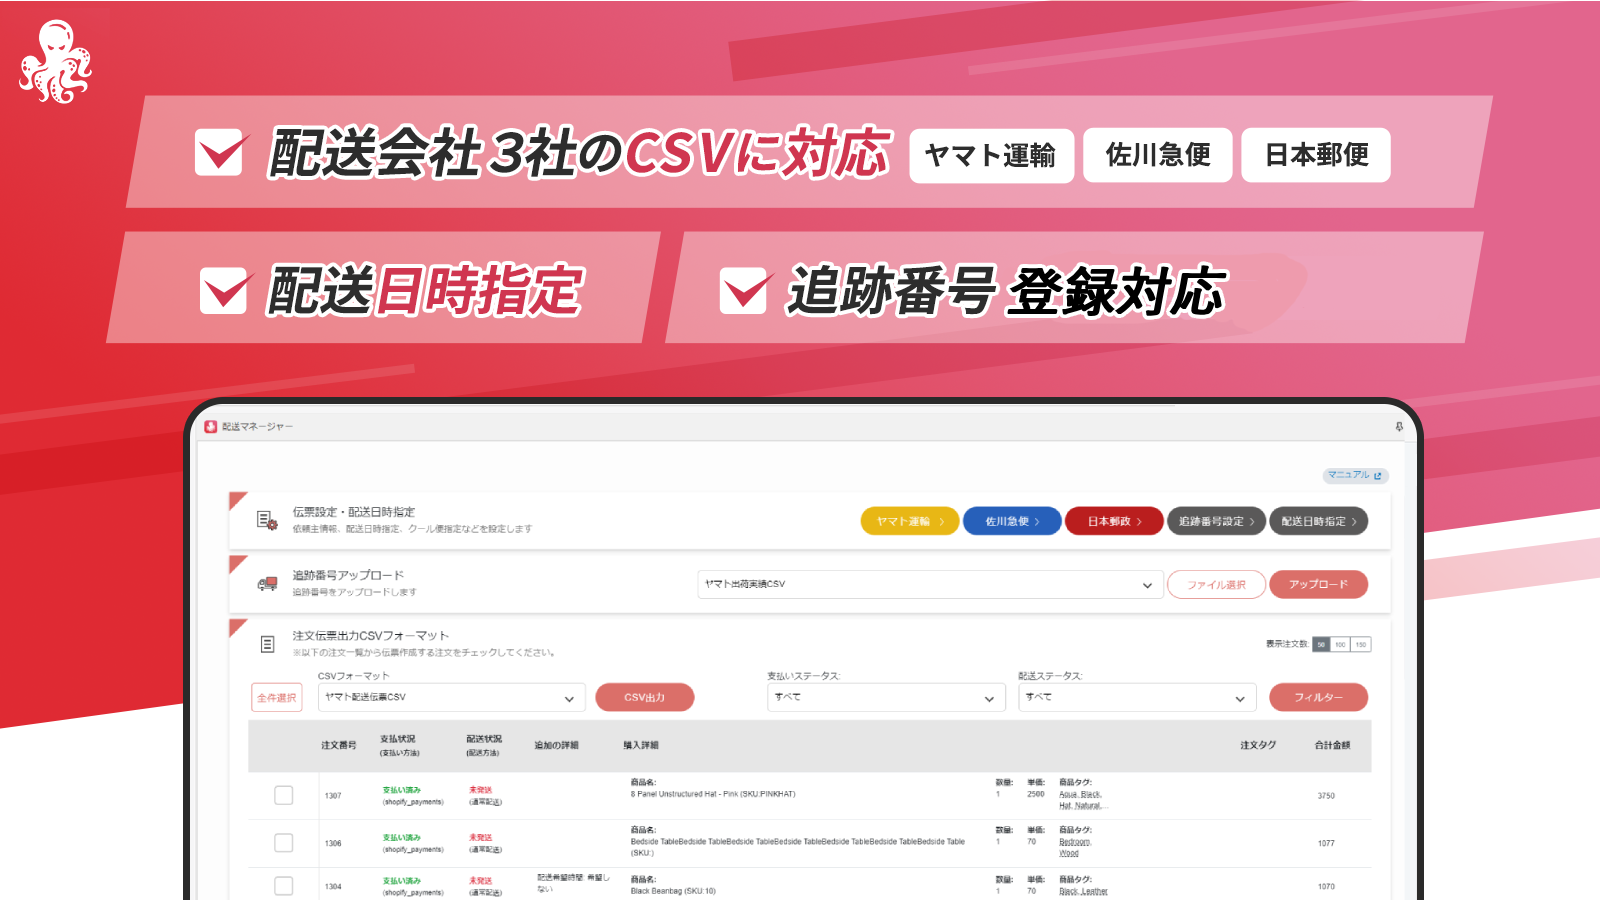 ヤマト、佐川、日本郵政の配送伝票作成CSVに対応。配送日時指定や追跡番号のLINE配信が可能な優良コスパアプリです